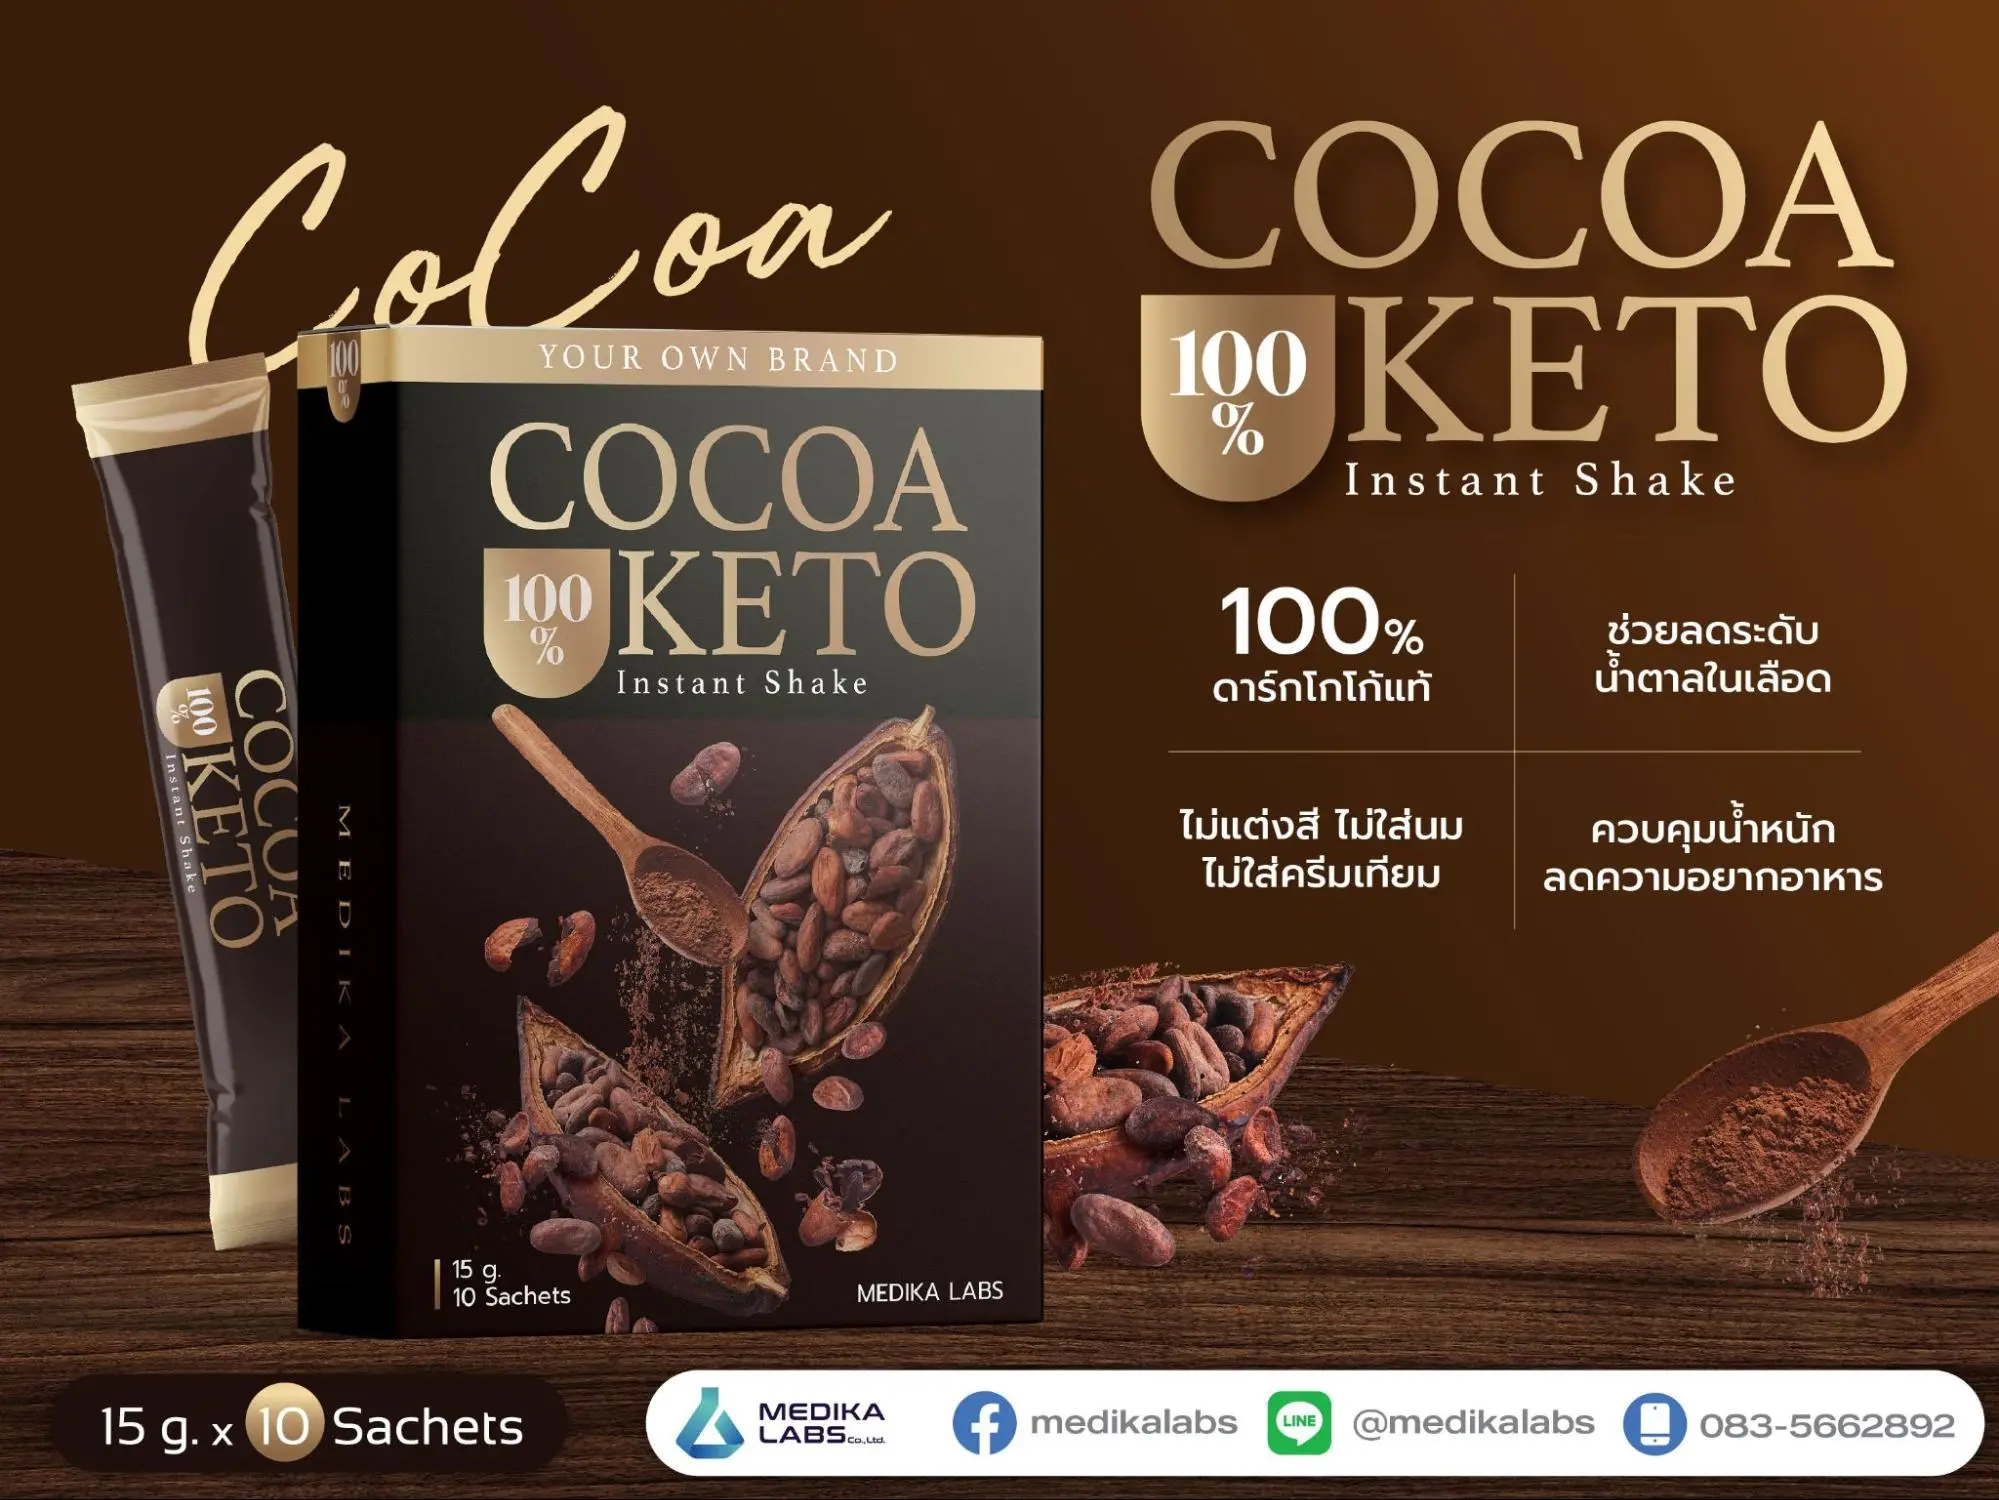 ตัวอย่างแบรนด์อาหารเสริม cocoa keto